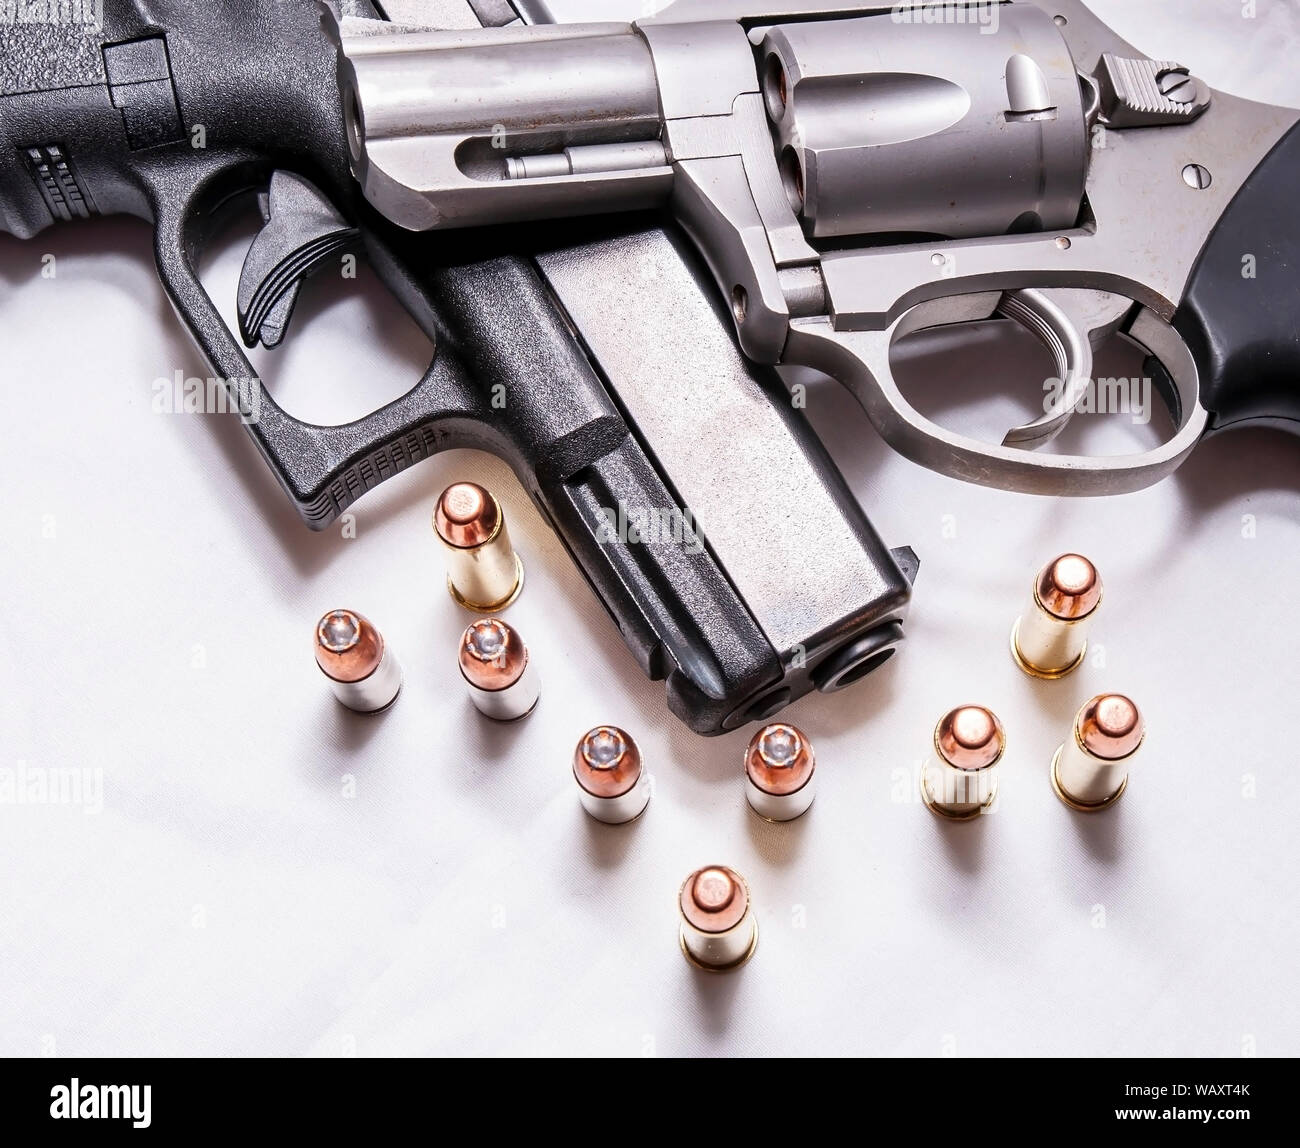 Eine Brüskierung gerochen, Edelstahl 357 Magnum Revolver auf einem schwarzen 9 mm Pistole mit mehreren Kugeln für jedes Kaliber vor Ihnen auf weißem Hintergrund Stockfoto